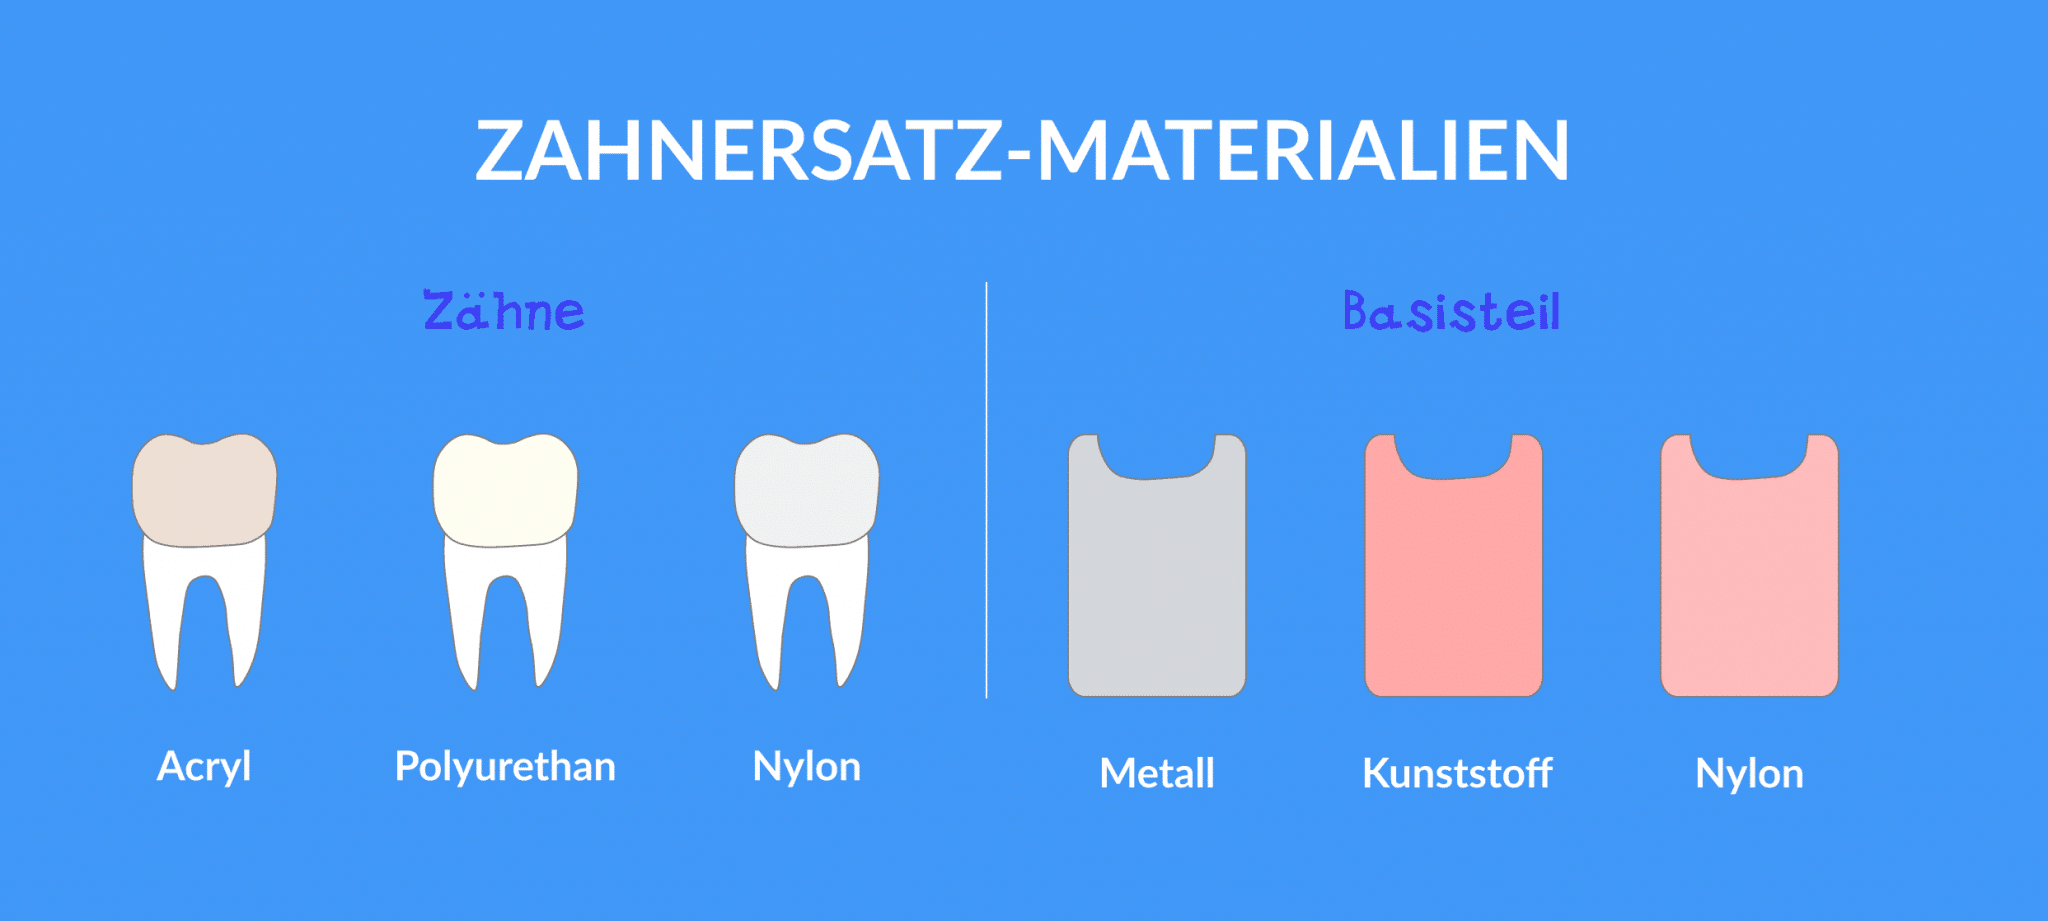 Zahnersatz-Materialien